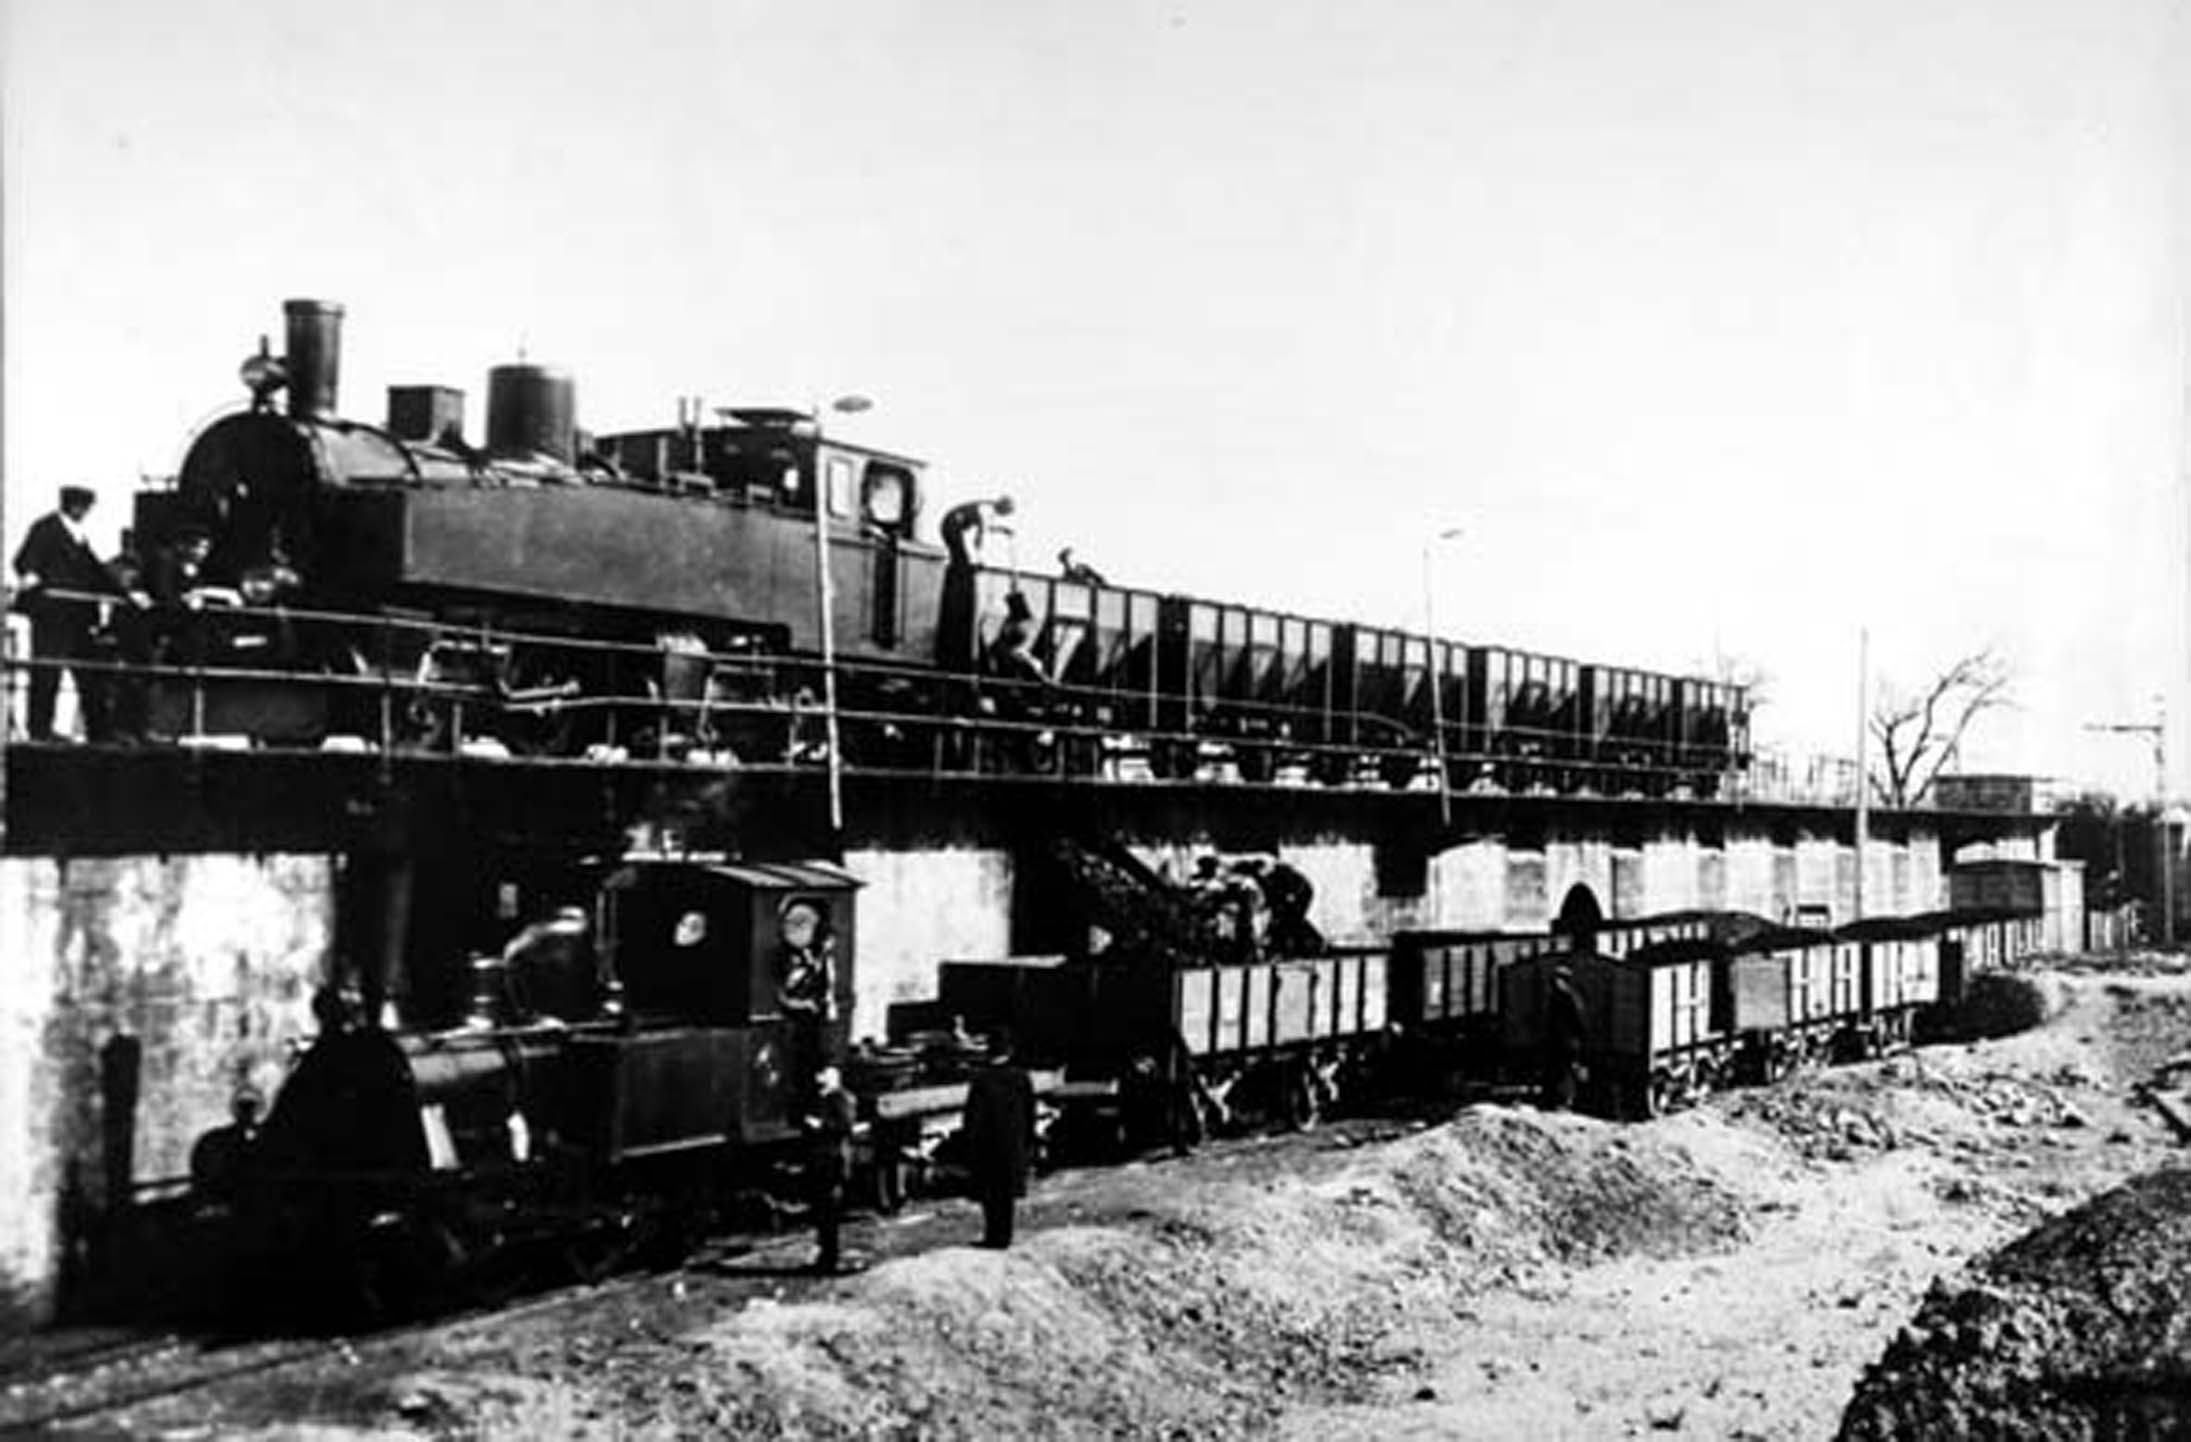 Locomotora "Teruel" descarga carbón en Zaragoza, archivo : Juan Manero